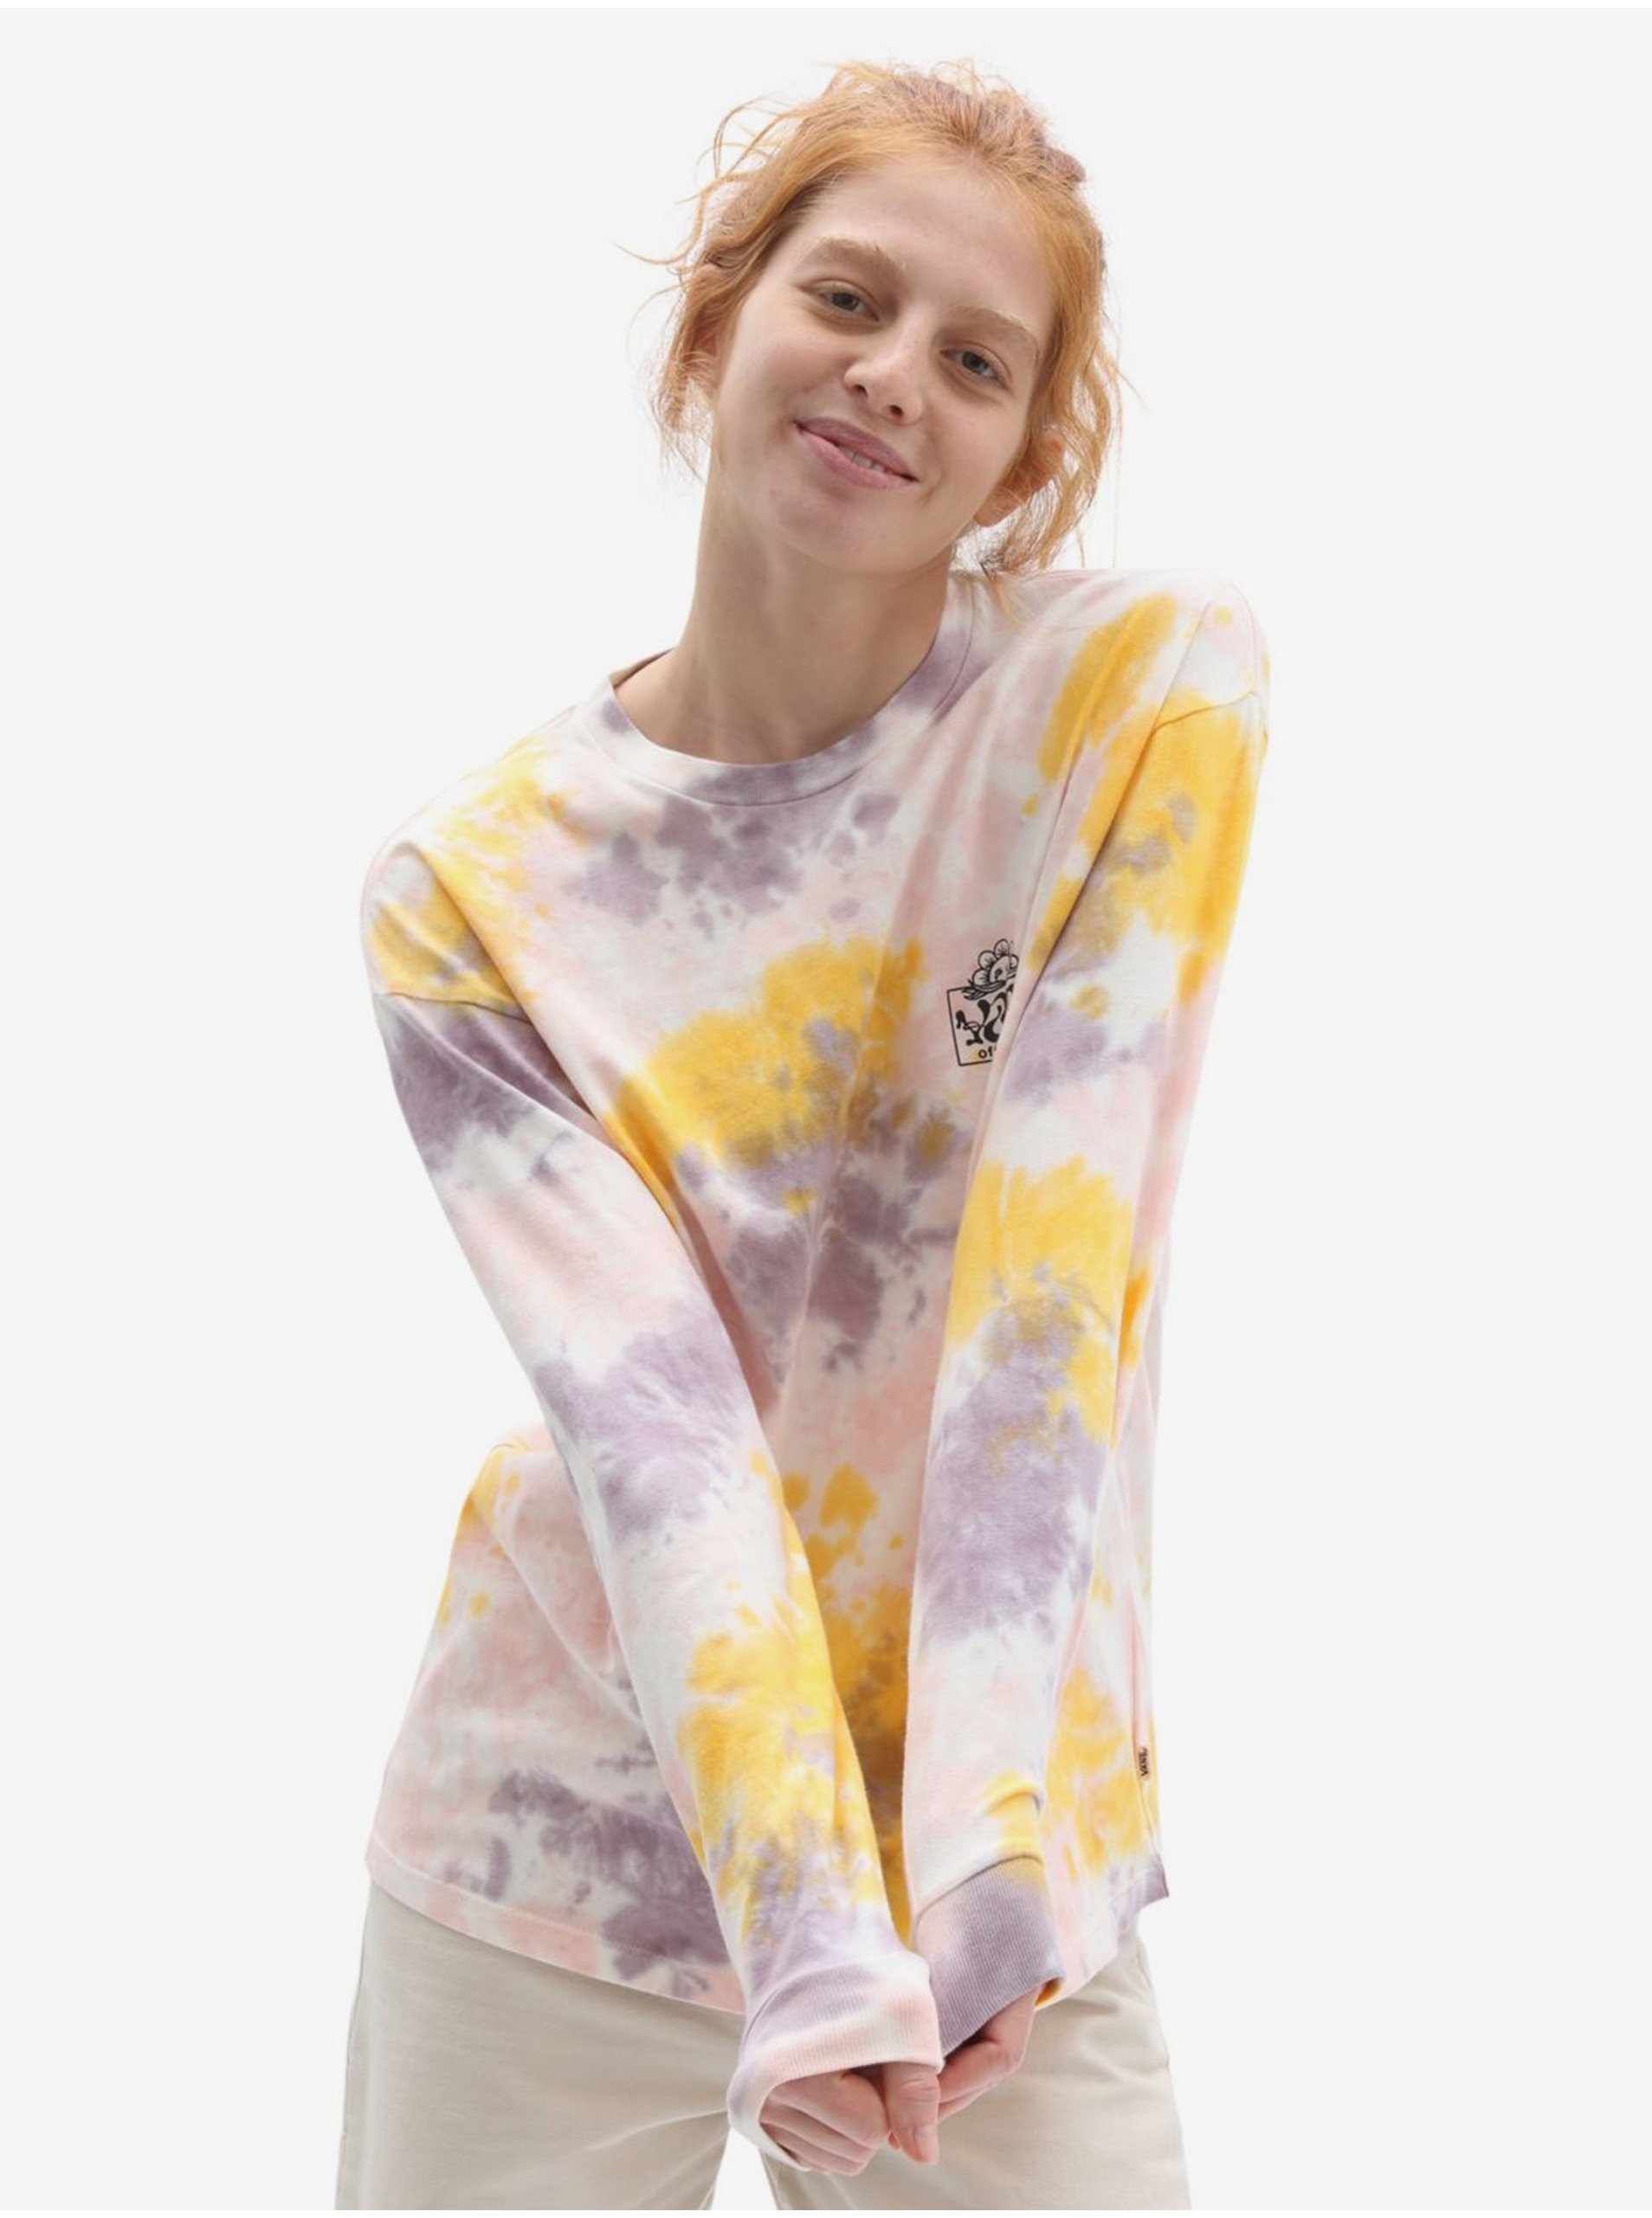 E-shop Žluto-fialové dámské batikované tričko VANS Mascy